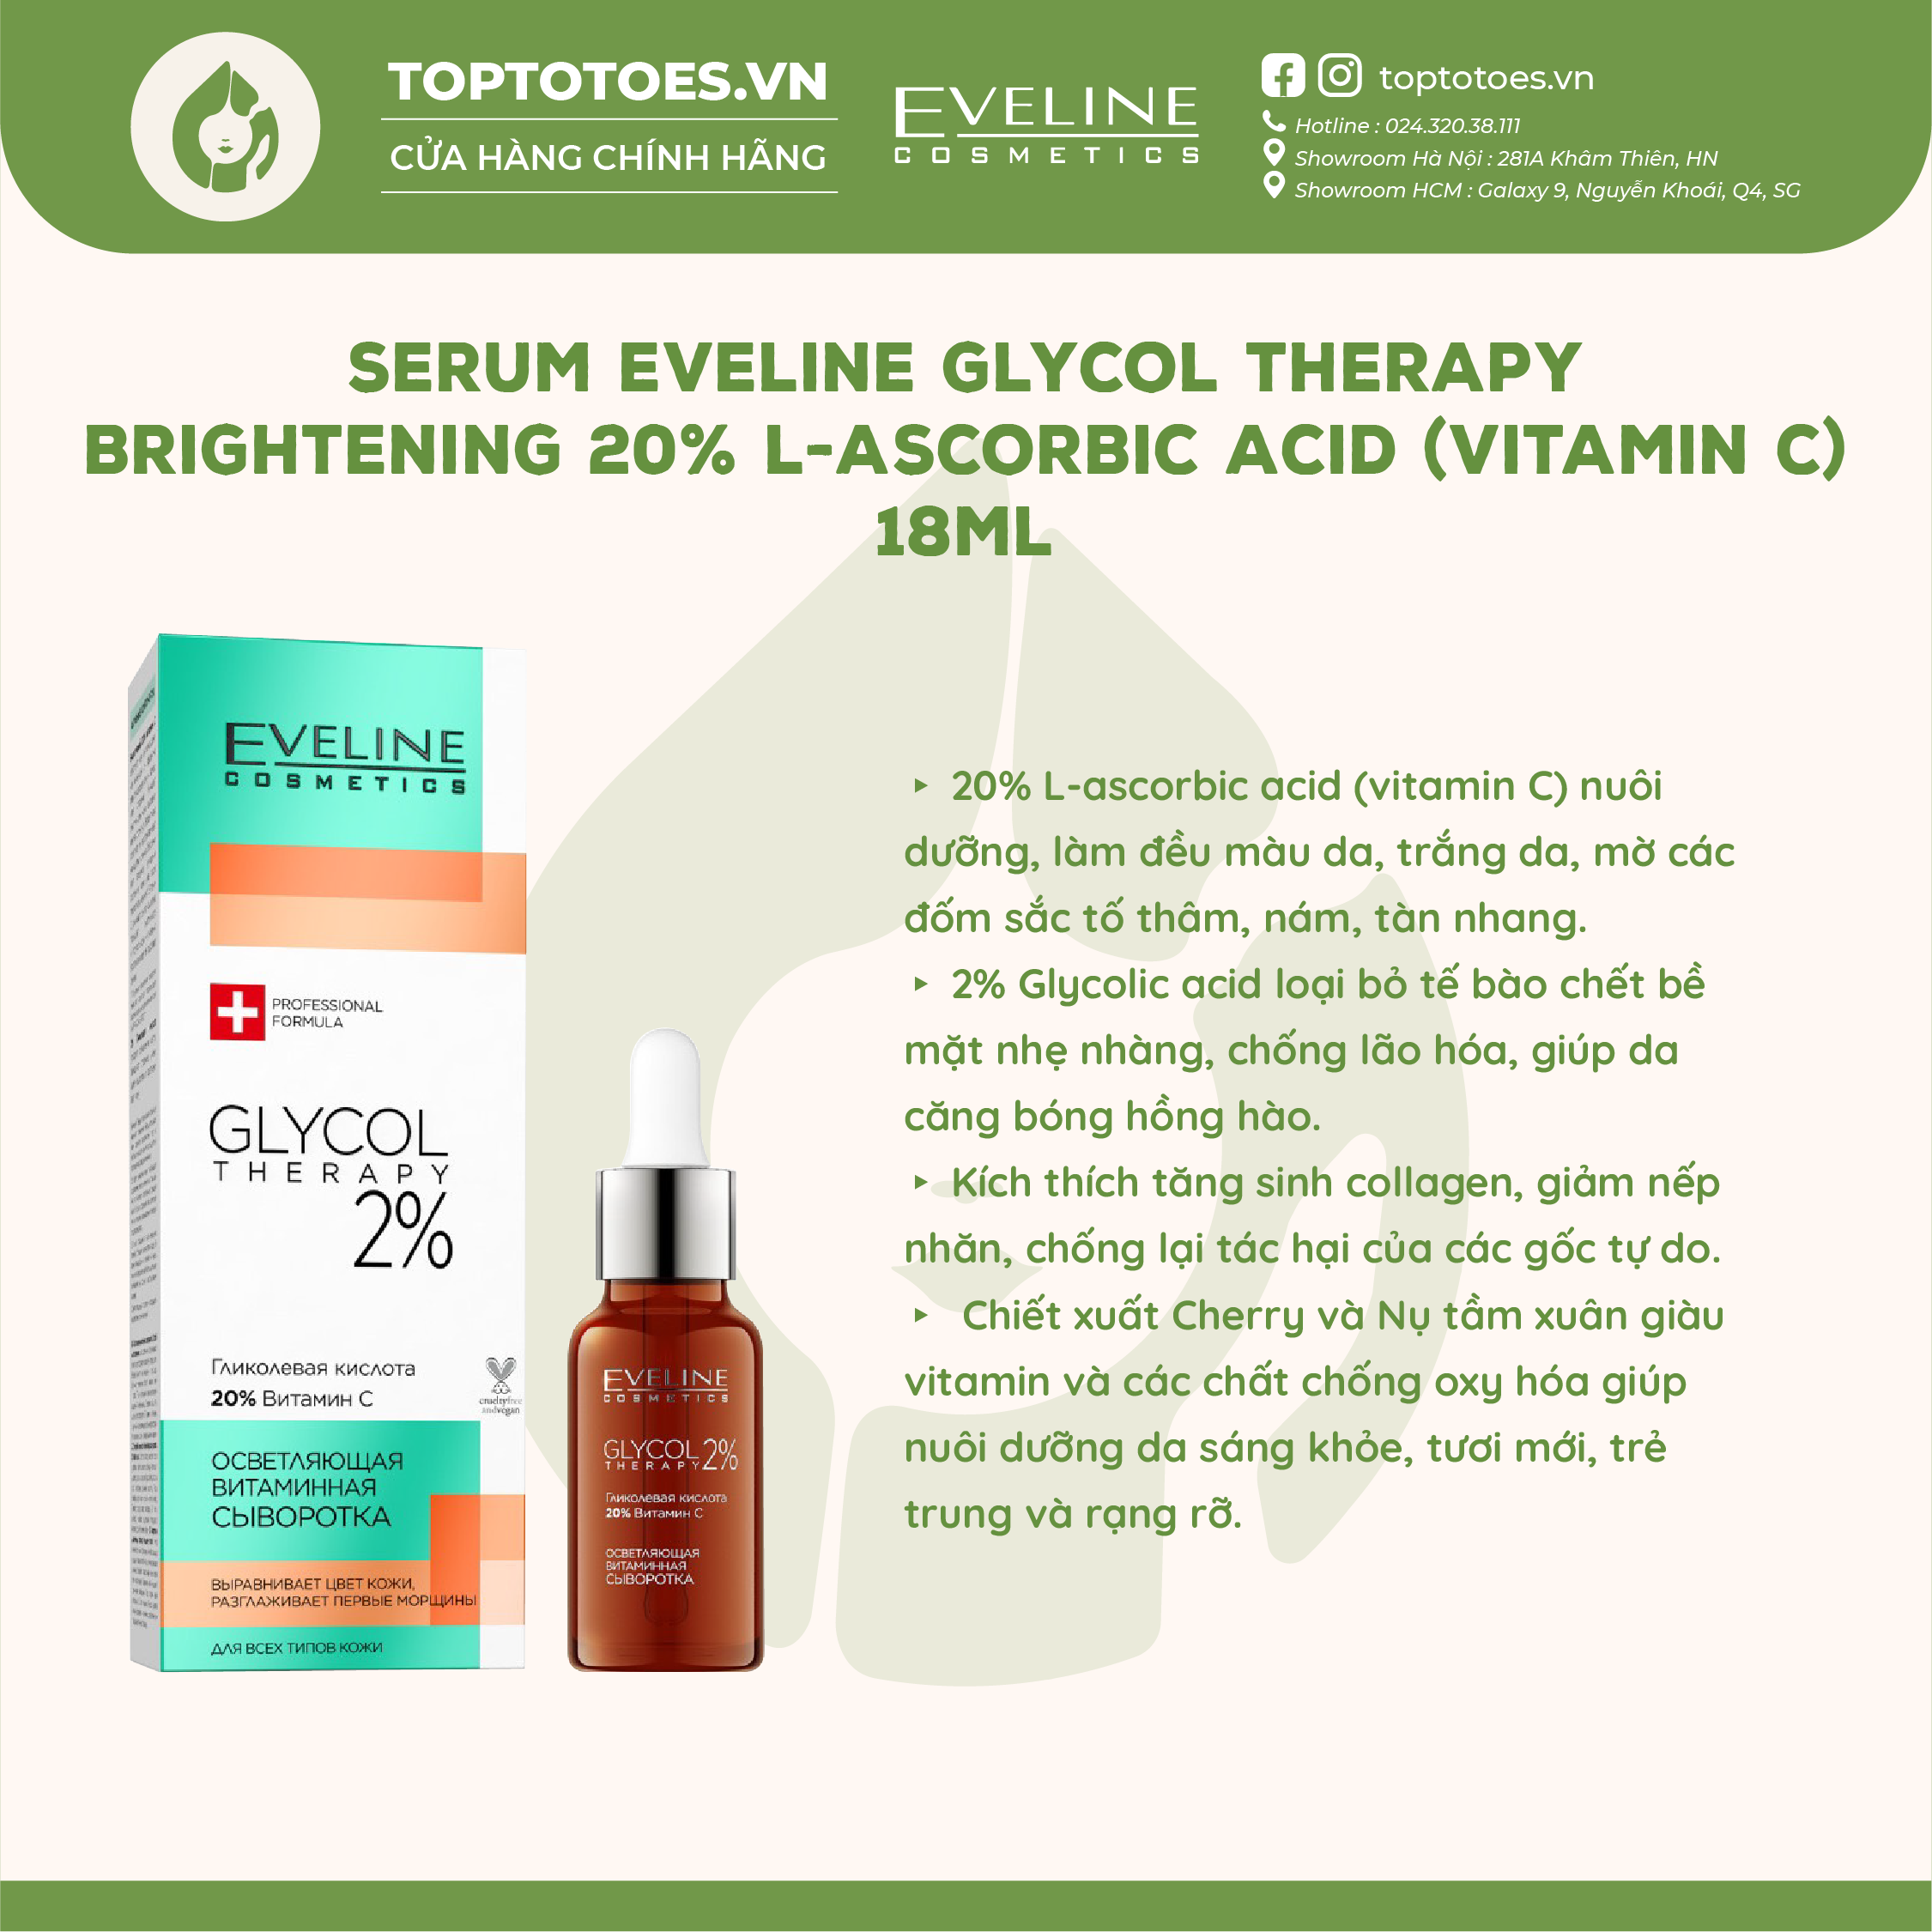 Serum Eveline Glycol Therapy Brightening 20% L-ascorbic Acid (Vitamin C) dưỡng da trắng sáng, căng bóng, đều màu